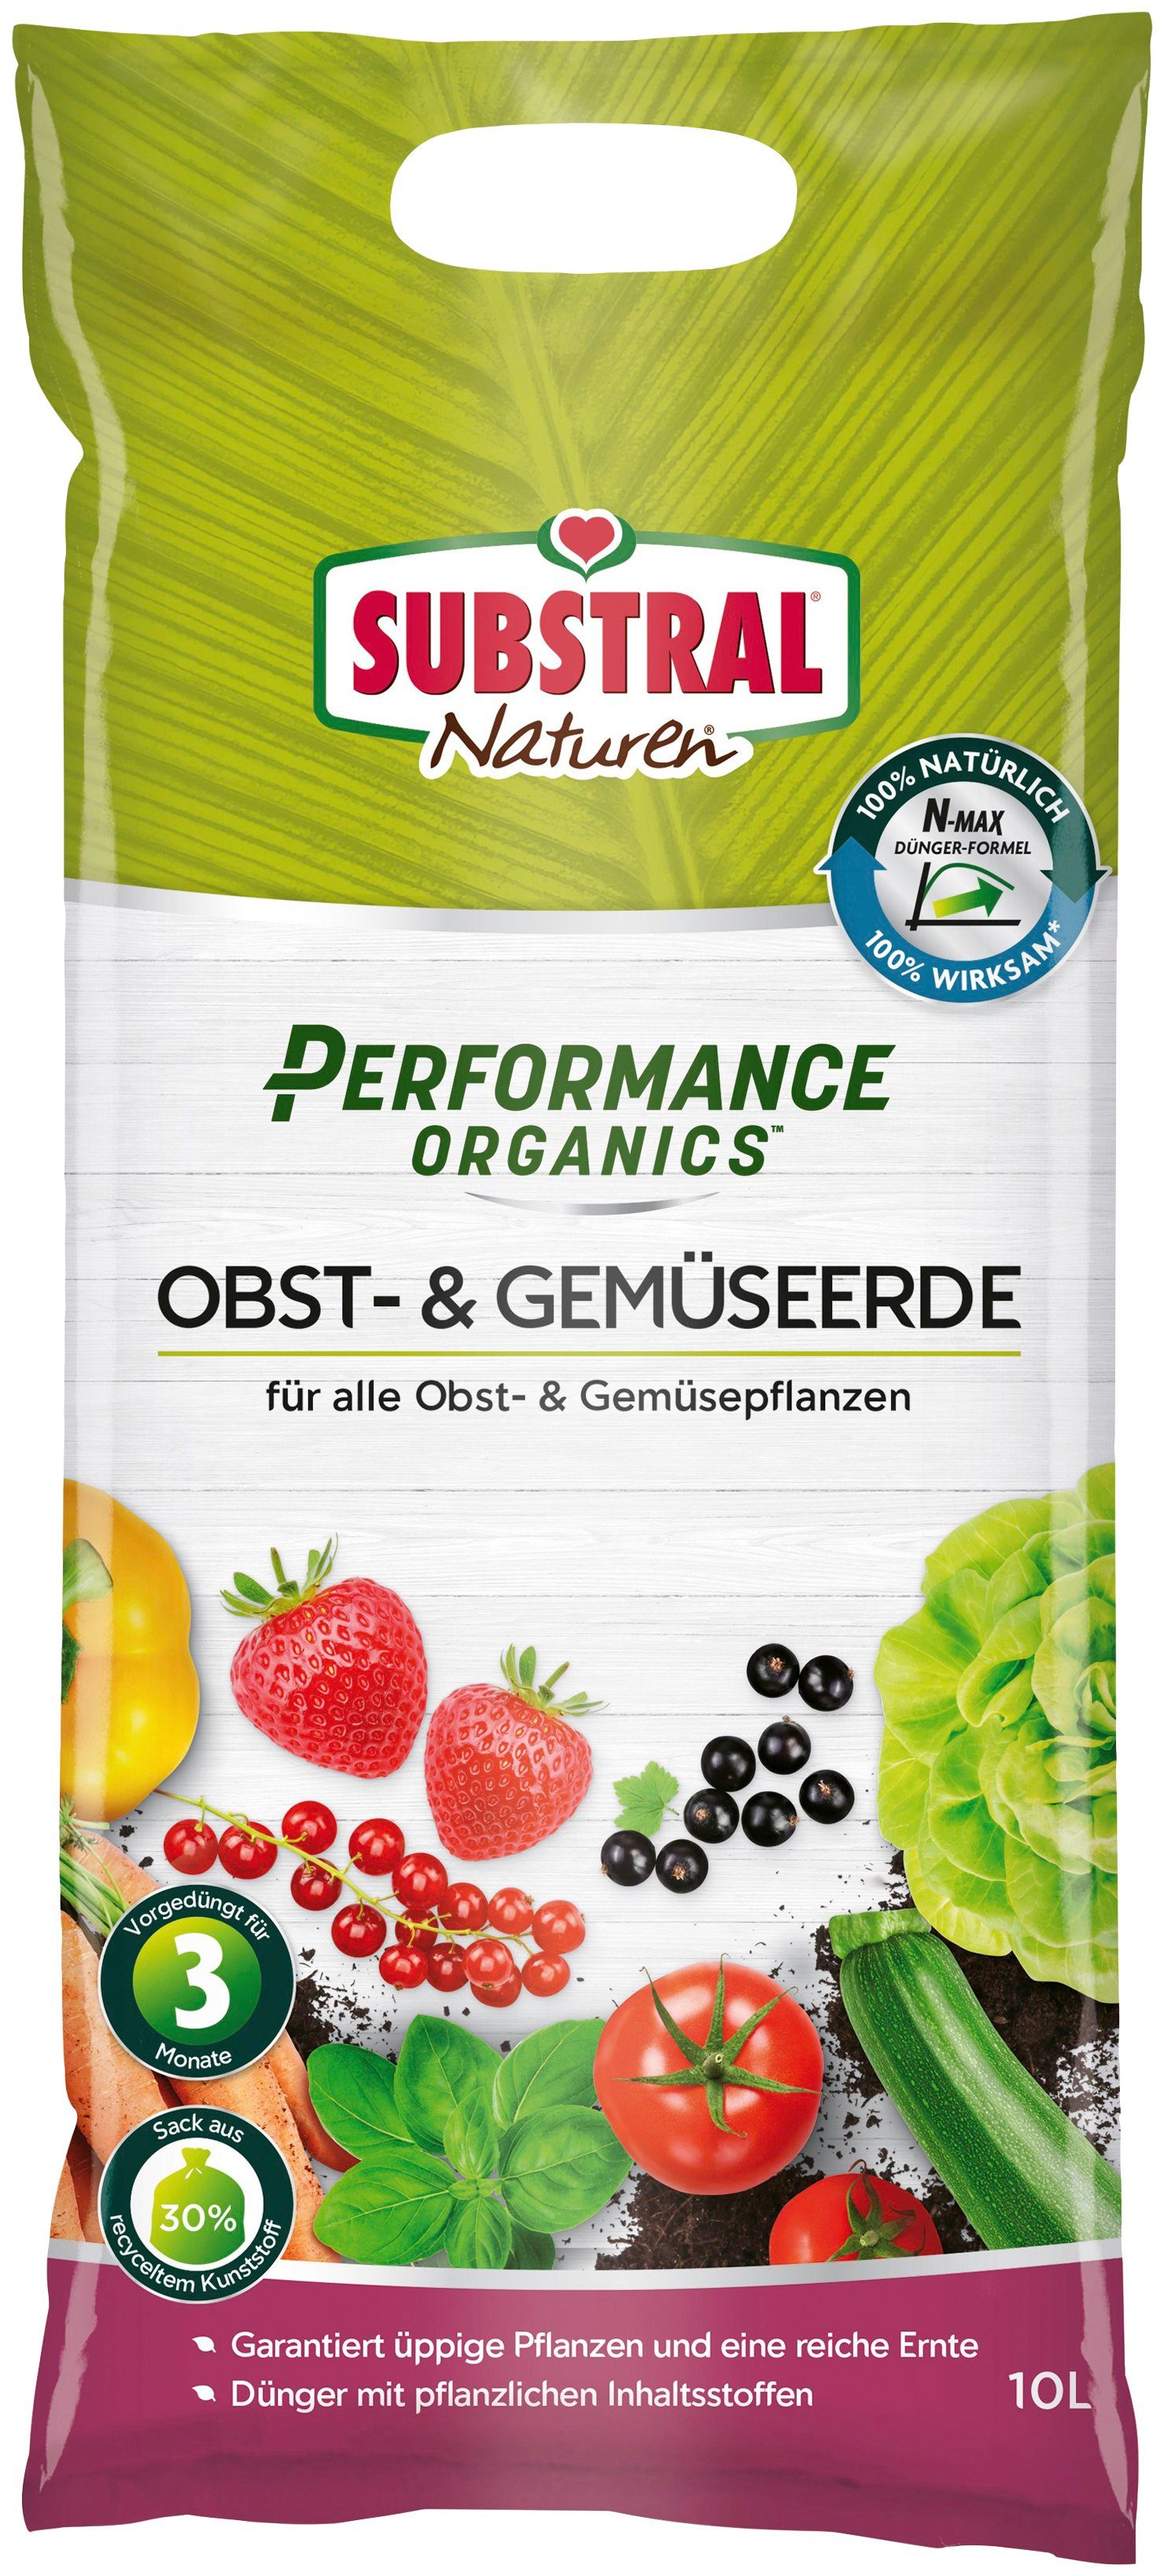 Substral Pflanzerde »Naturen Performance Organics« Bio-Qualität, Tomaten-  und Gemüseerde, 10 Liter online kaufen | OTTO